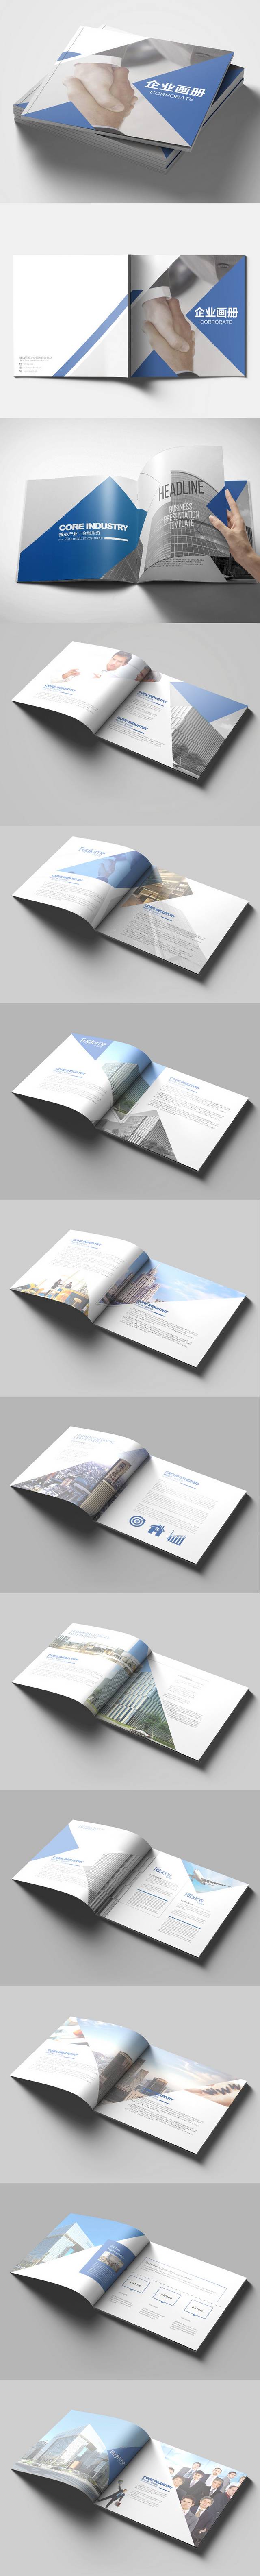 蓝色经典企业宣传册设计图册